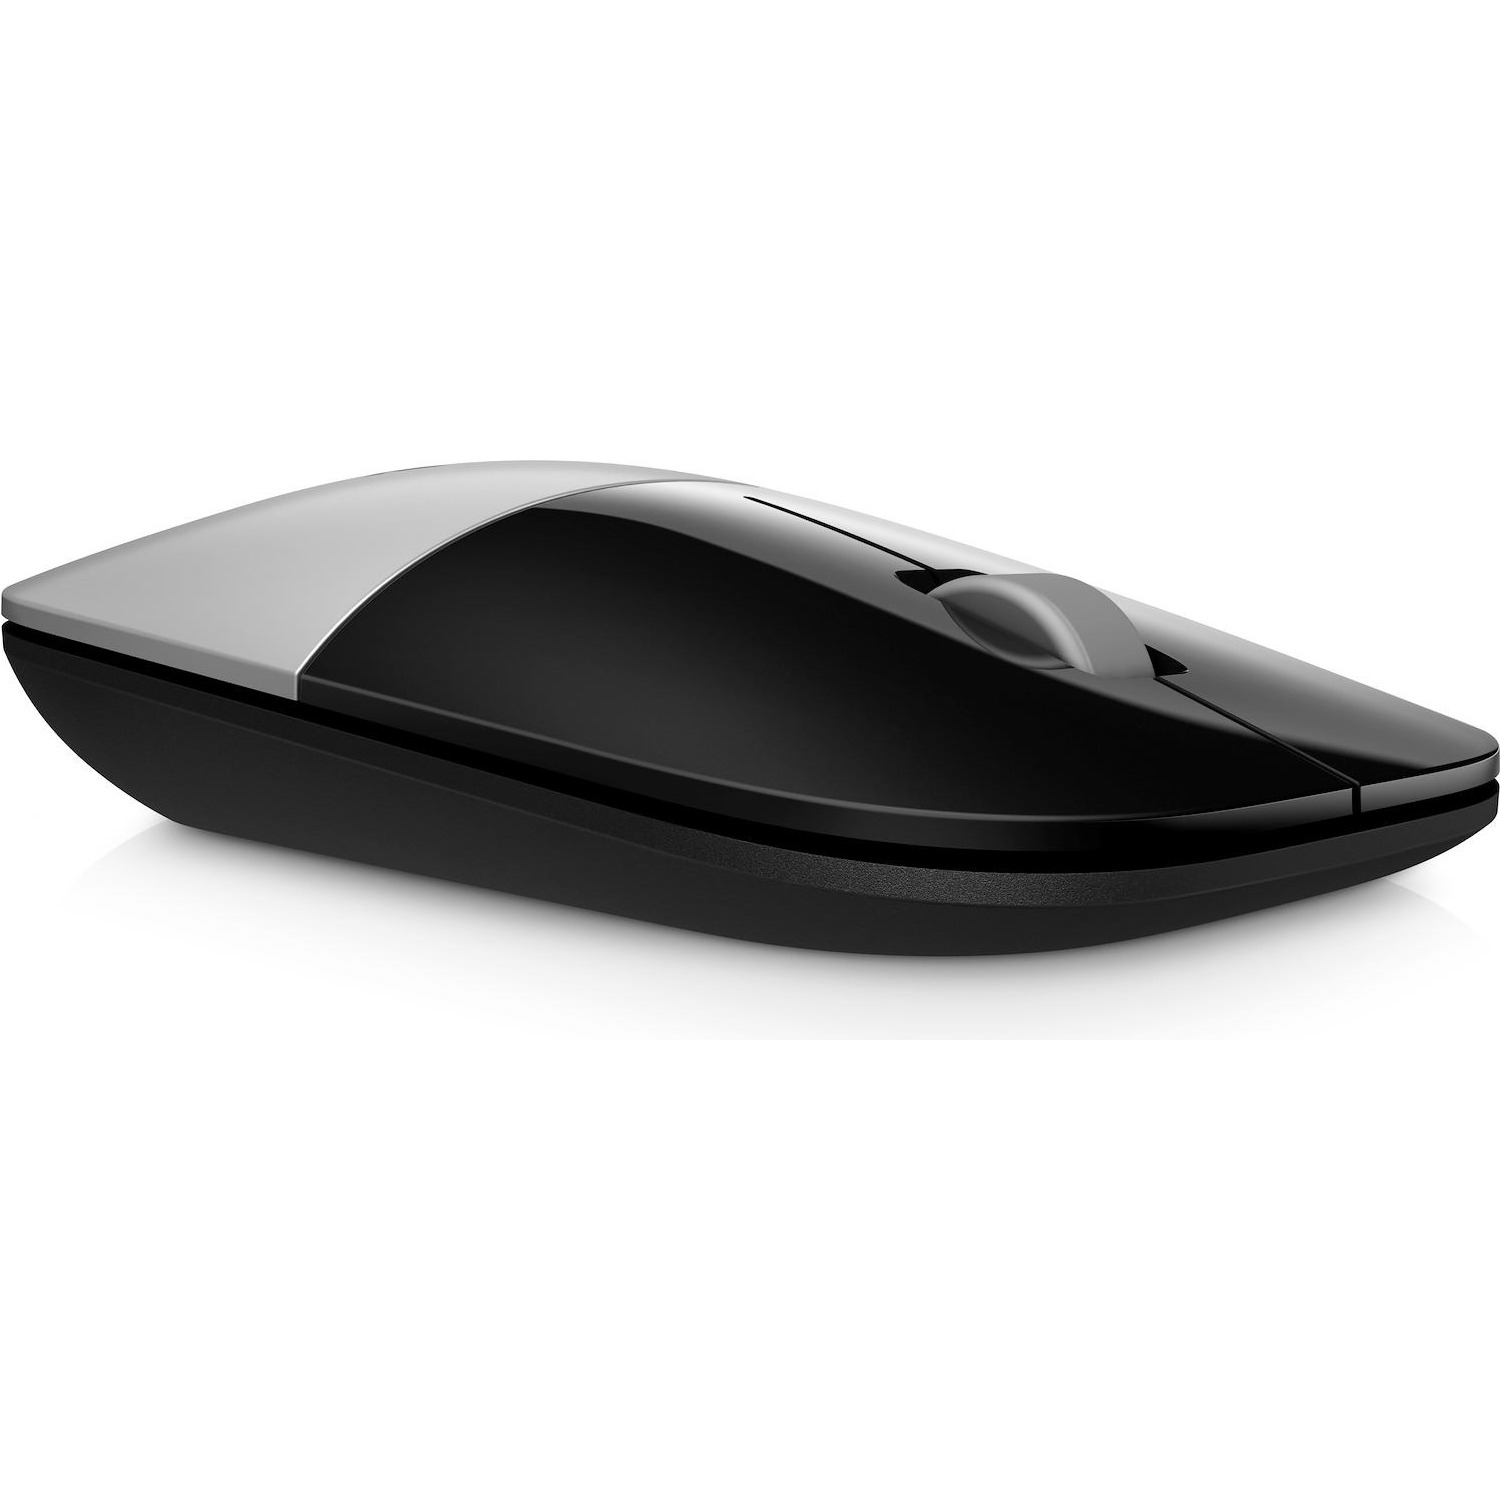 Immagine per Mouse HP Z3700 silver da DIMOStore